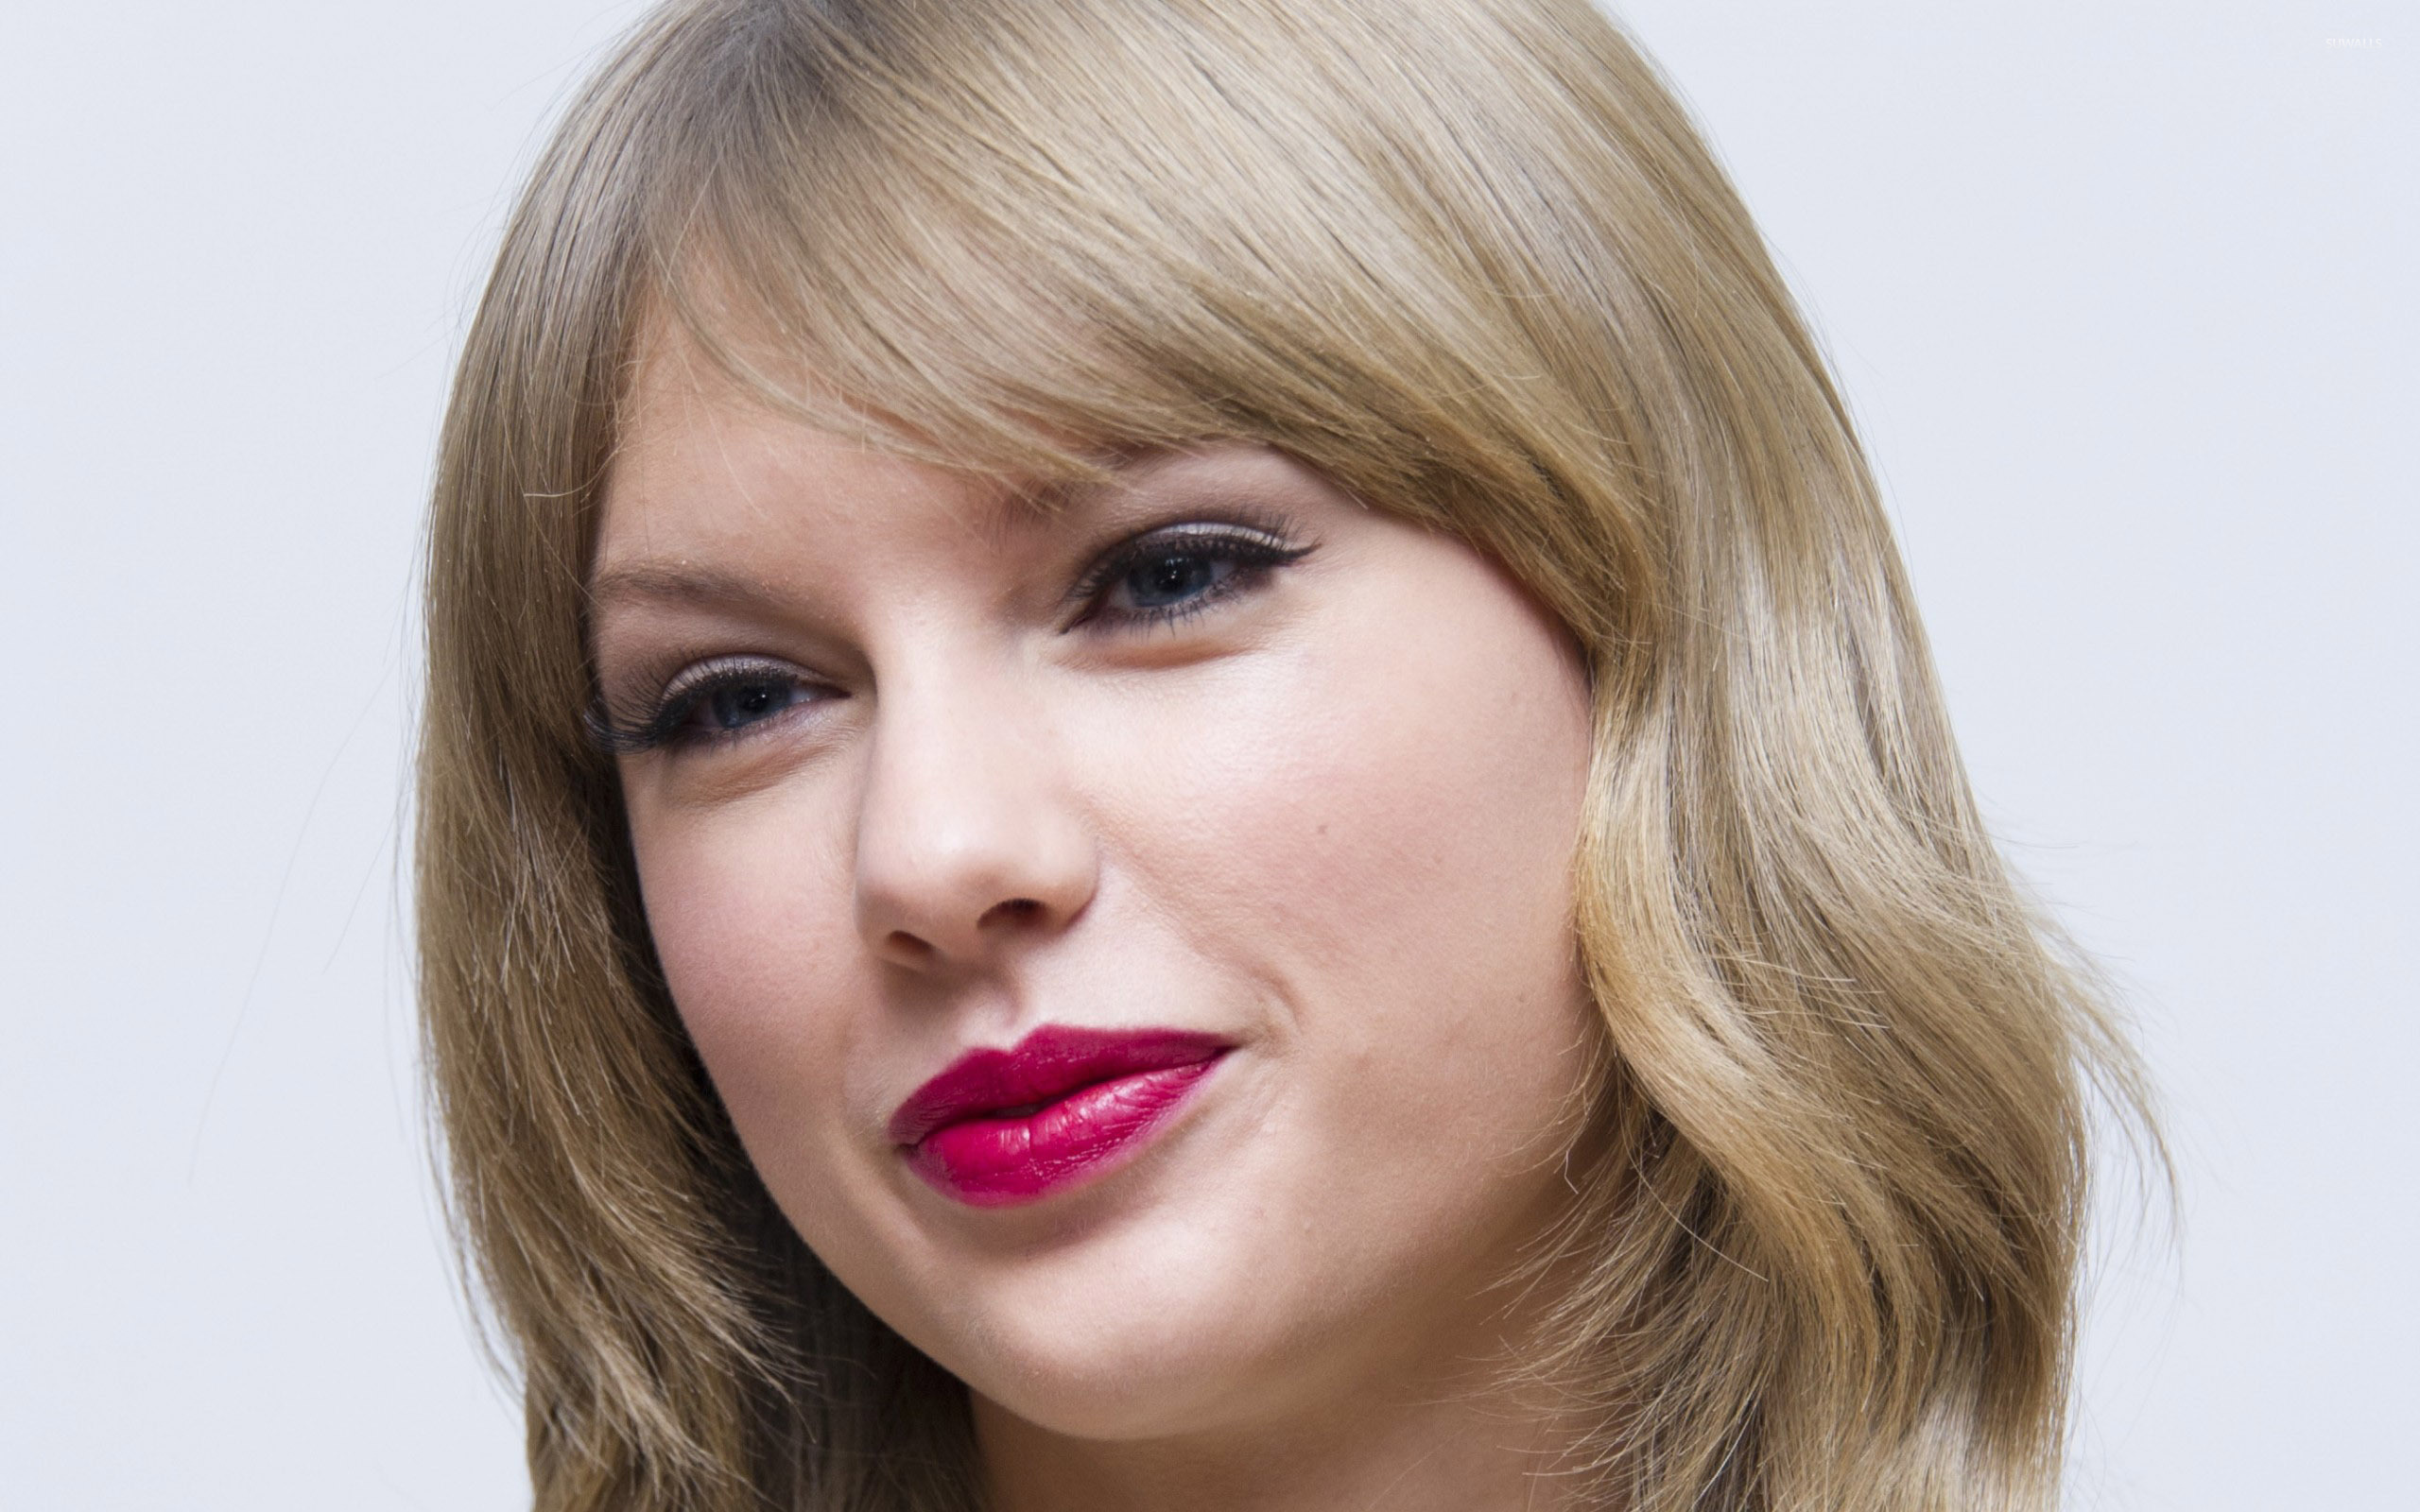 Taylor Swift Wallpaper Celebrity